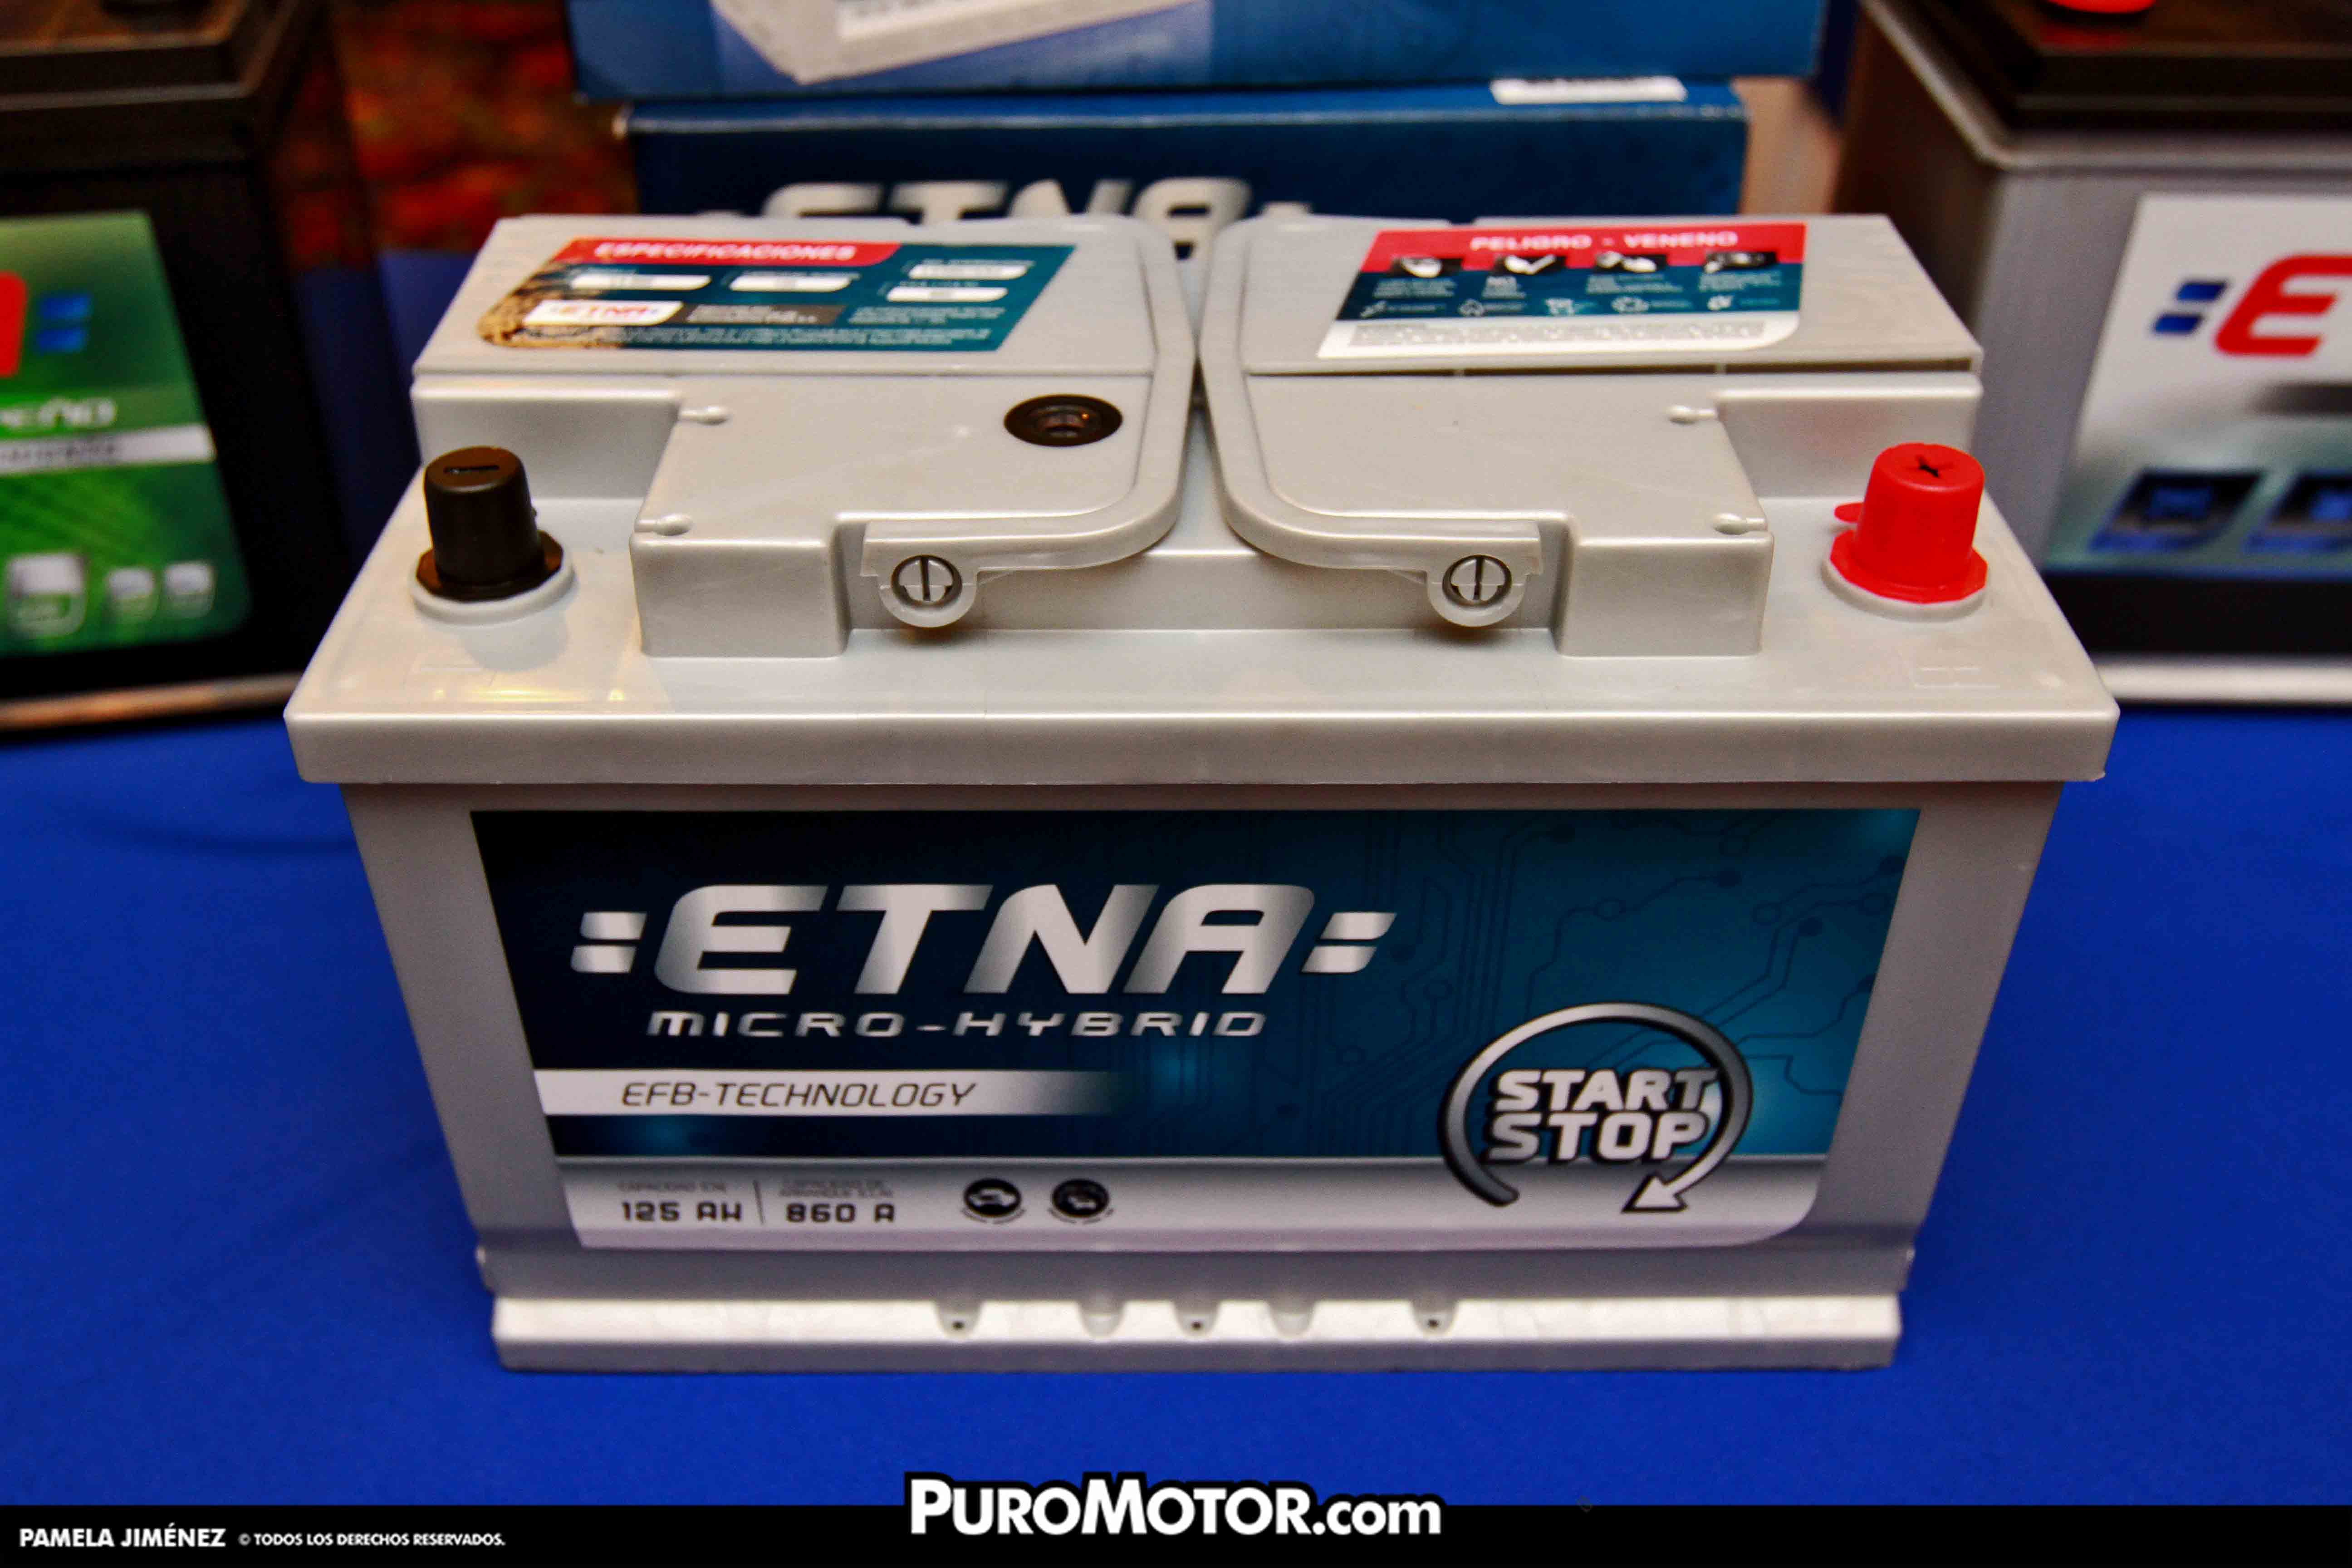 Batería para Carros Etna L4 860 START STOP 58515/94R - Todo Baterías Perú, Instalación de Baterías a domicilio